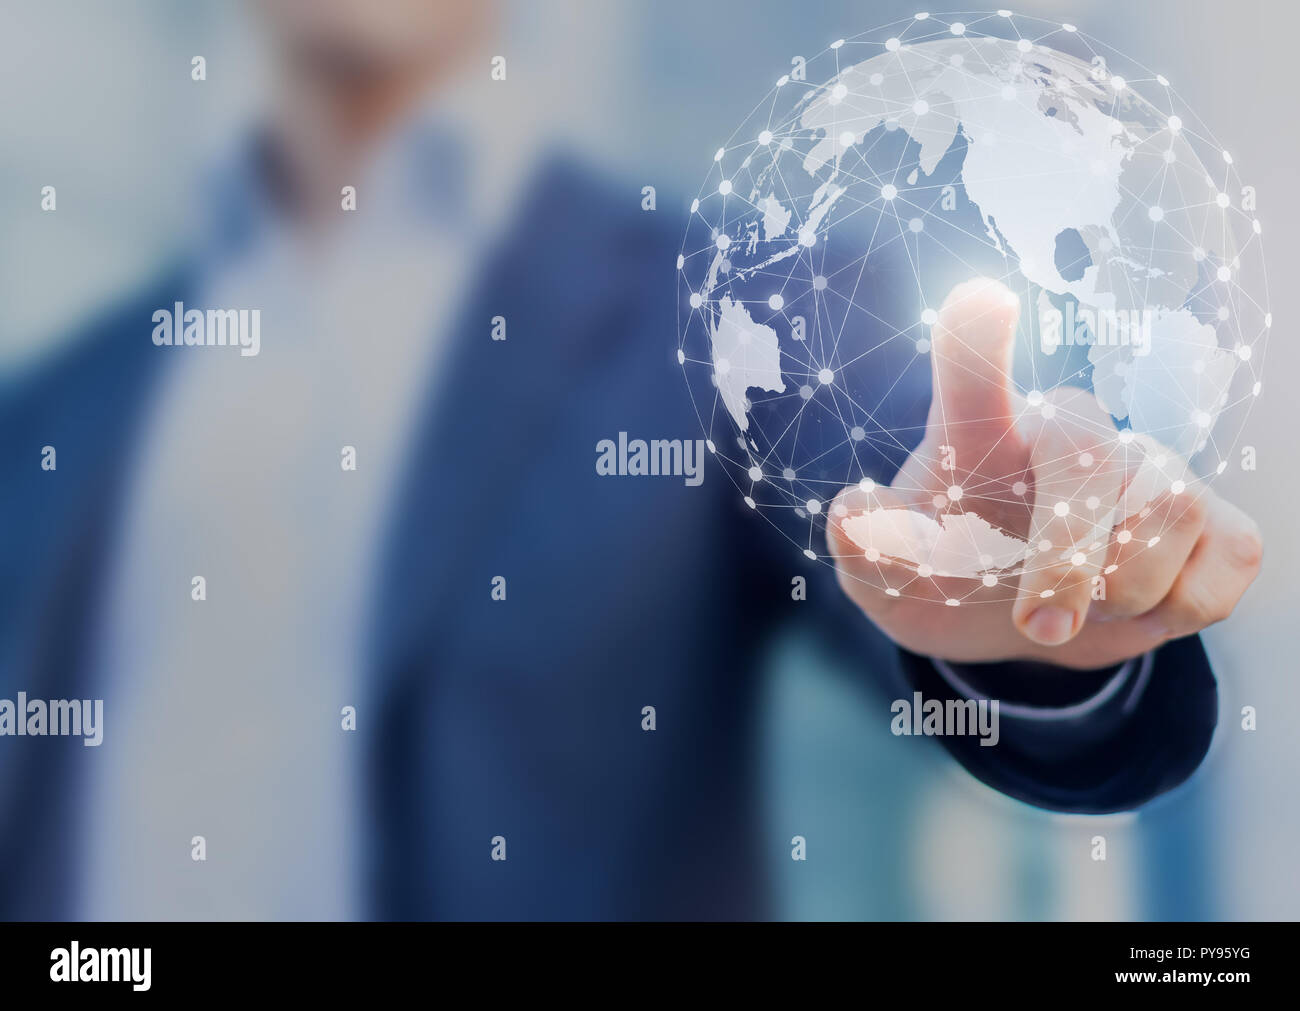 Globales Netzwerk Kommunikation mit internationalen Verbindungen für Business rund um die 3D-Weltkarte, Financial Exchange, Internet der Dinge (IoT), blockchain Stockfoto